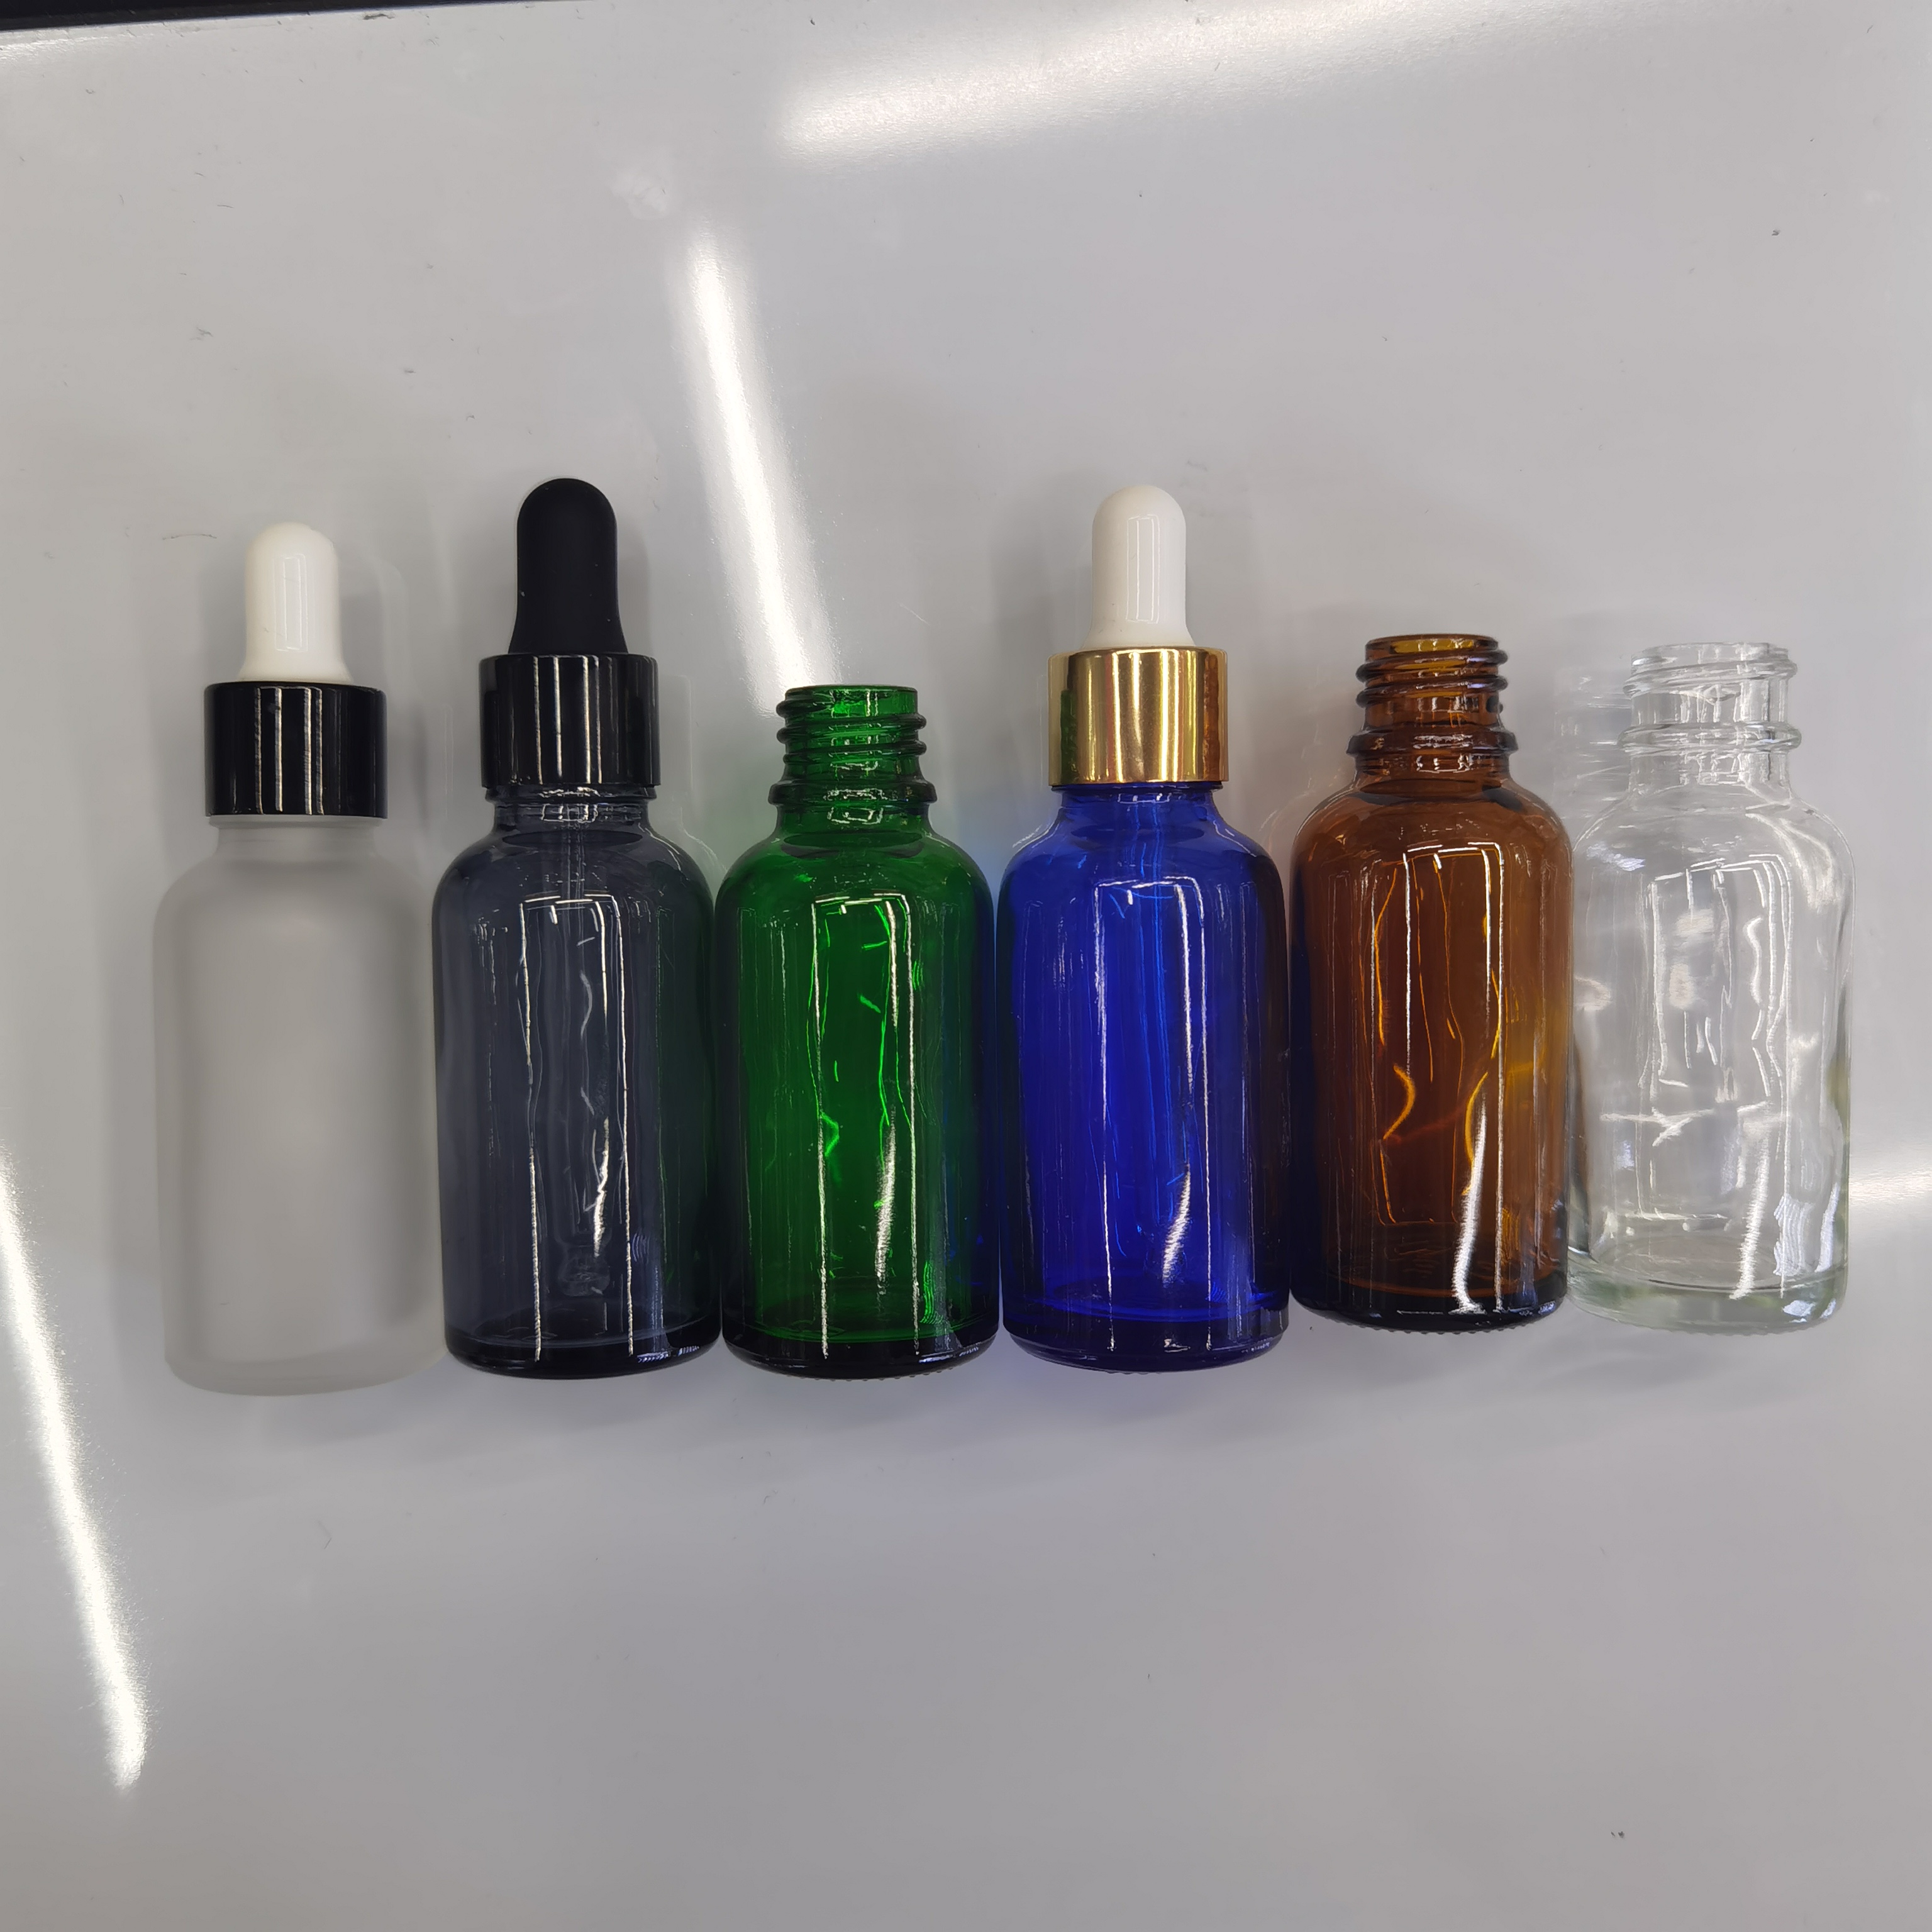 30ml精油瓶多种颜色一套茶色绿色蓝色透明款详情图1